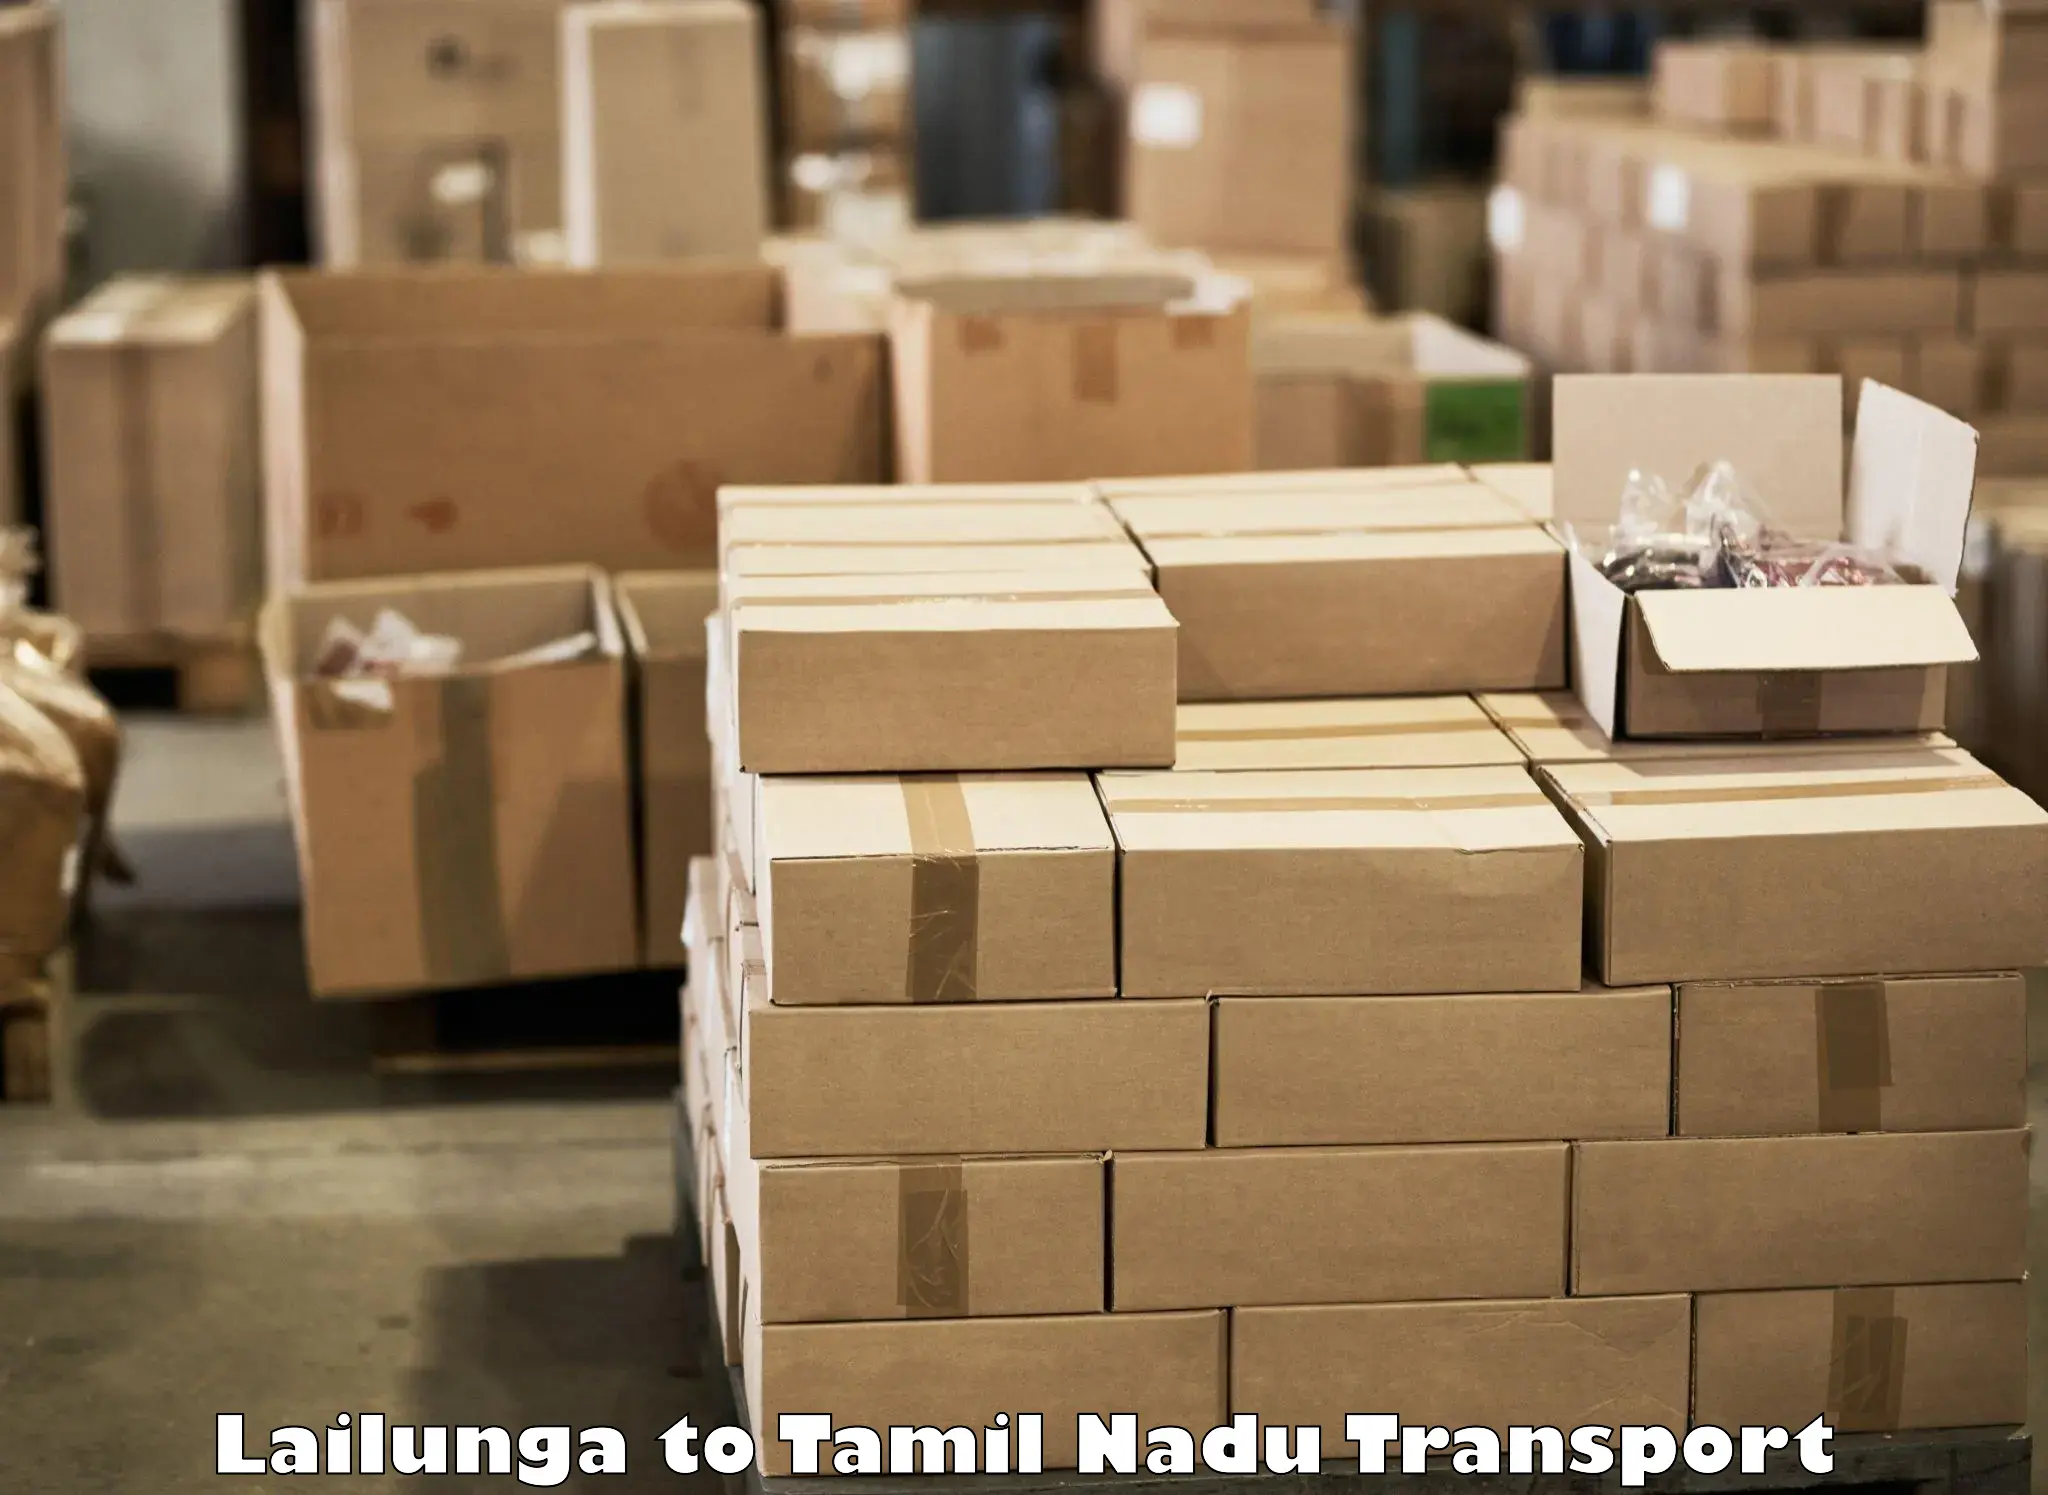 Daily parcel service transport Lailunga to Thiruvadanai